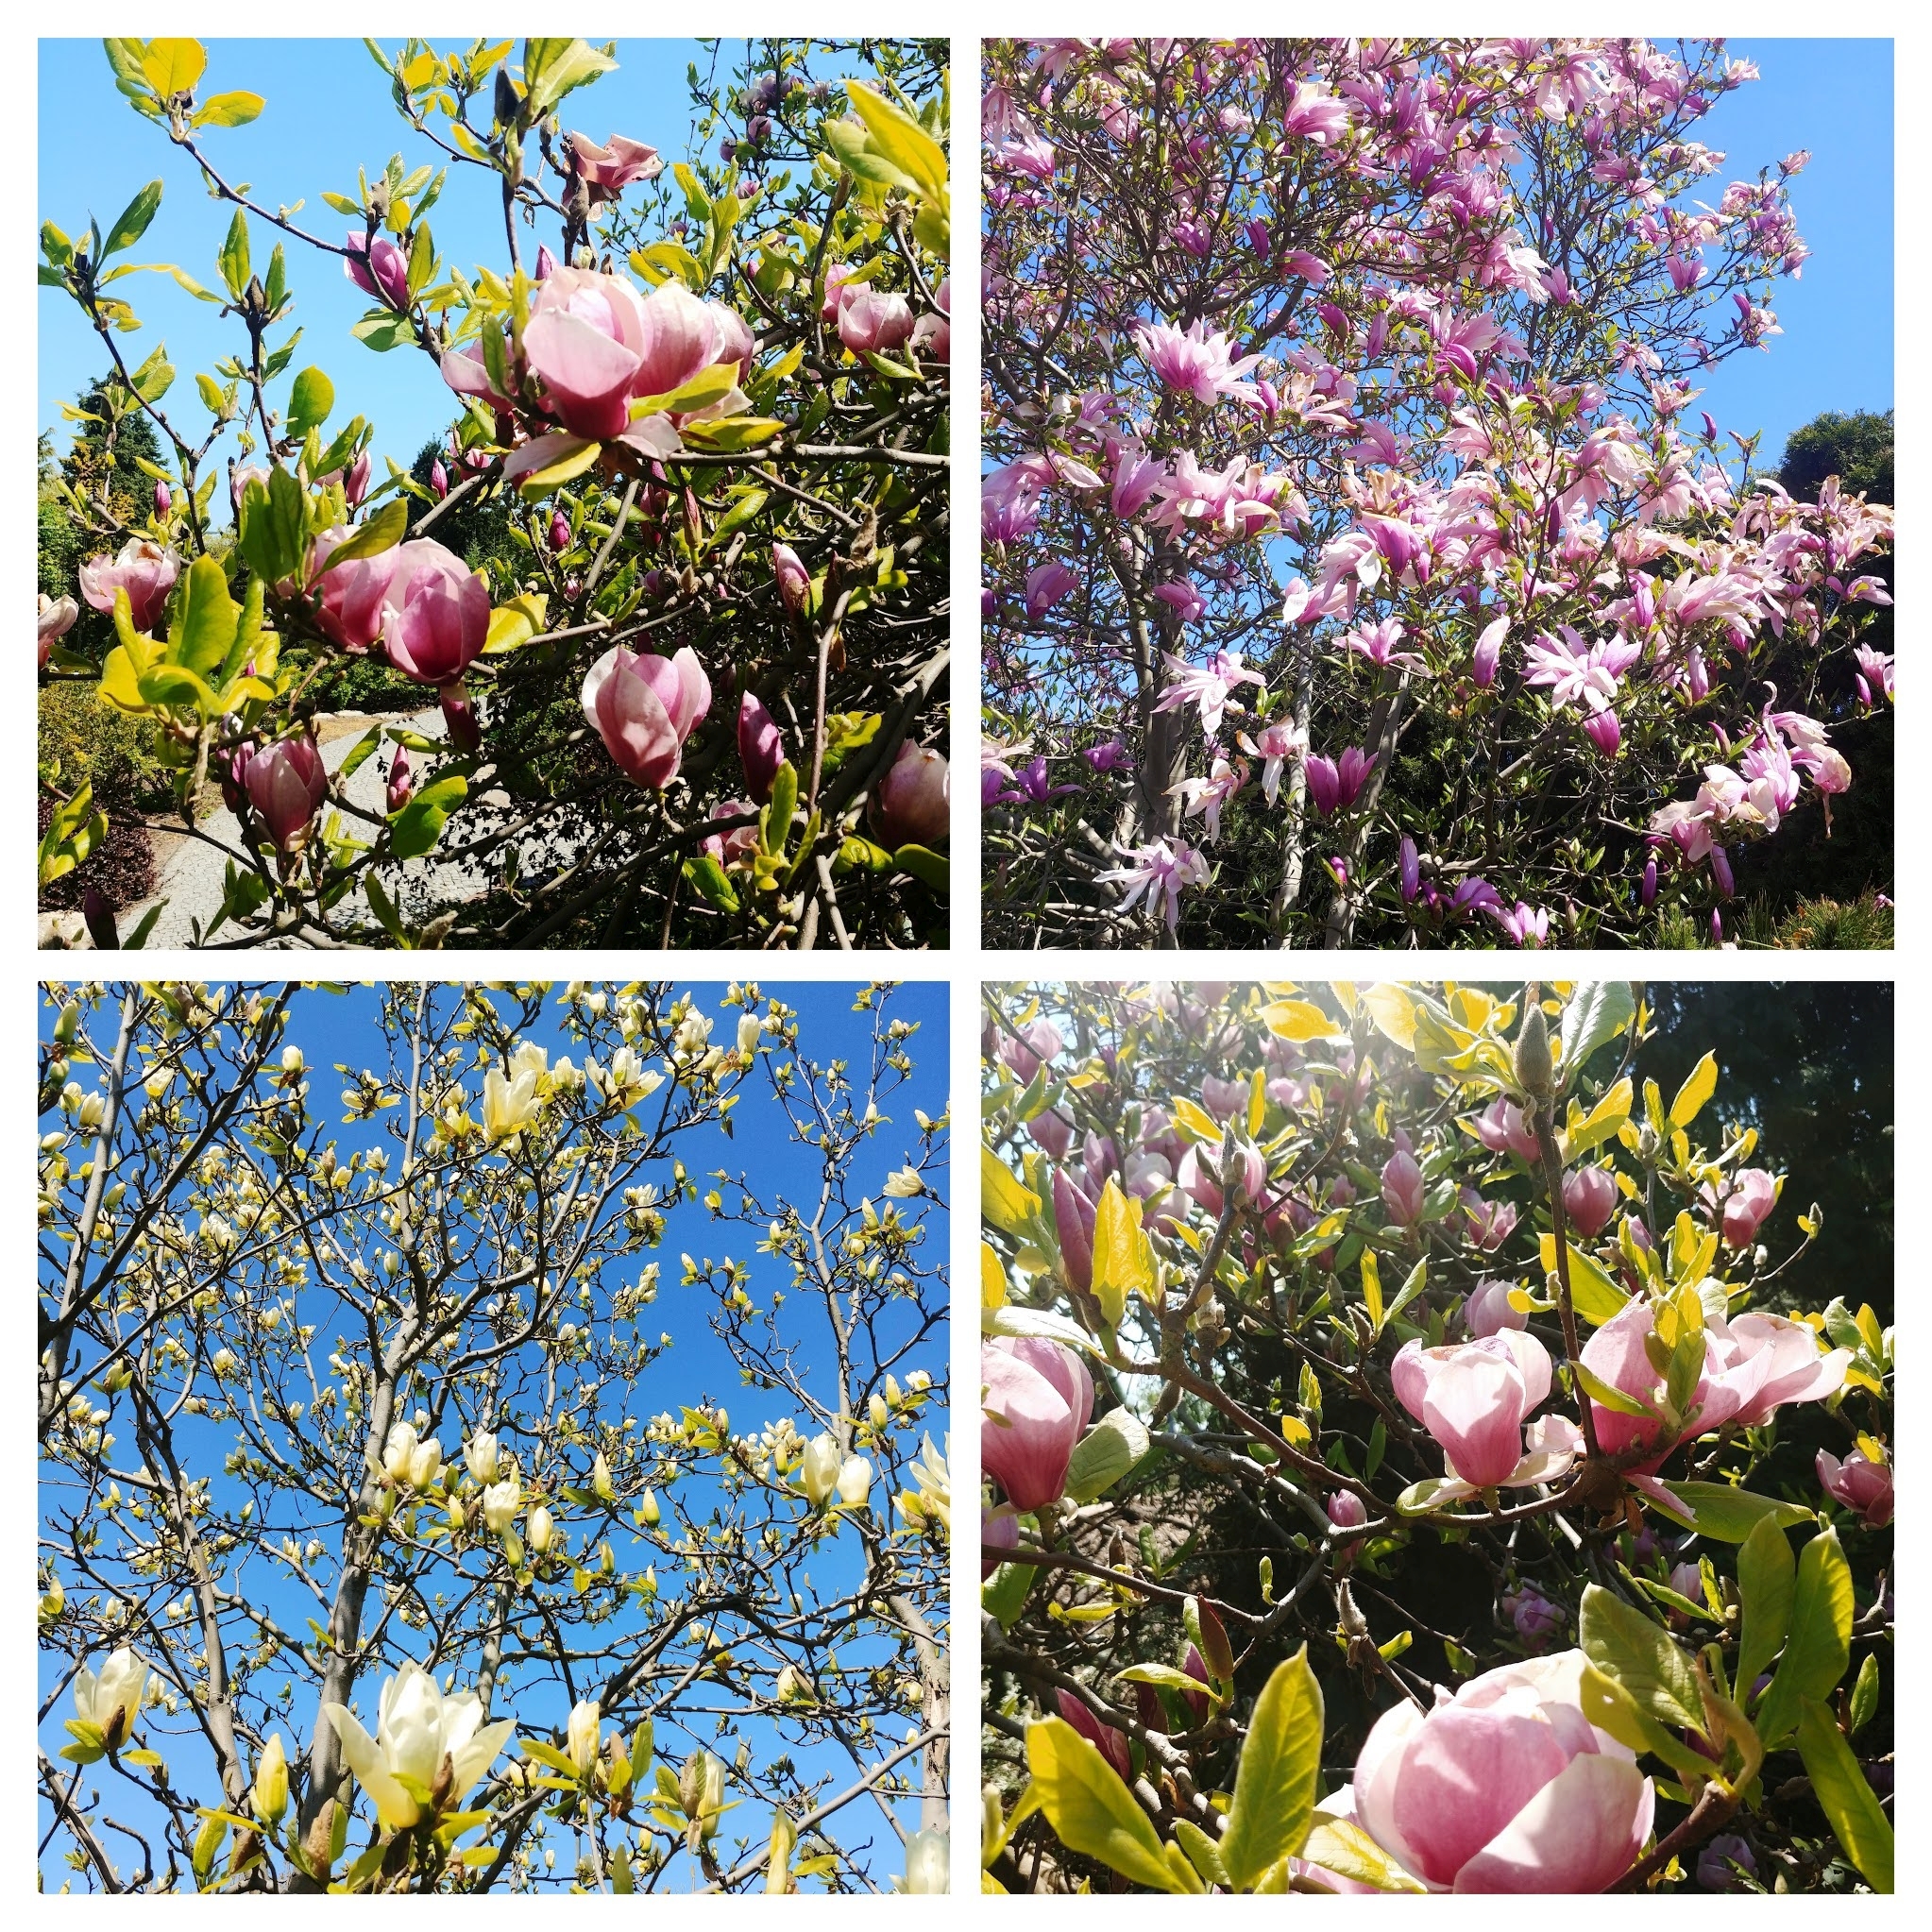 Pielęgnacja magnolii - jak zapewnić piękno i zdrowie rośliny